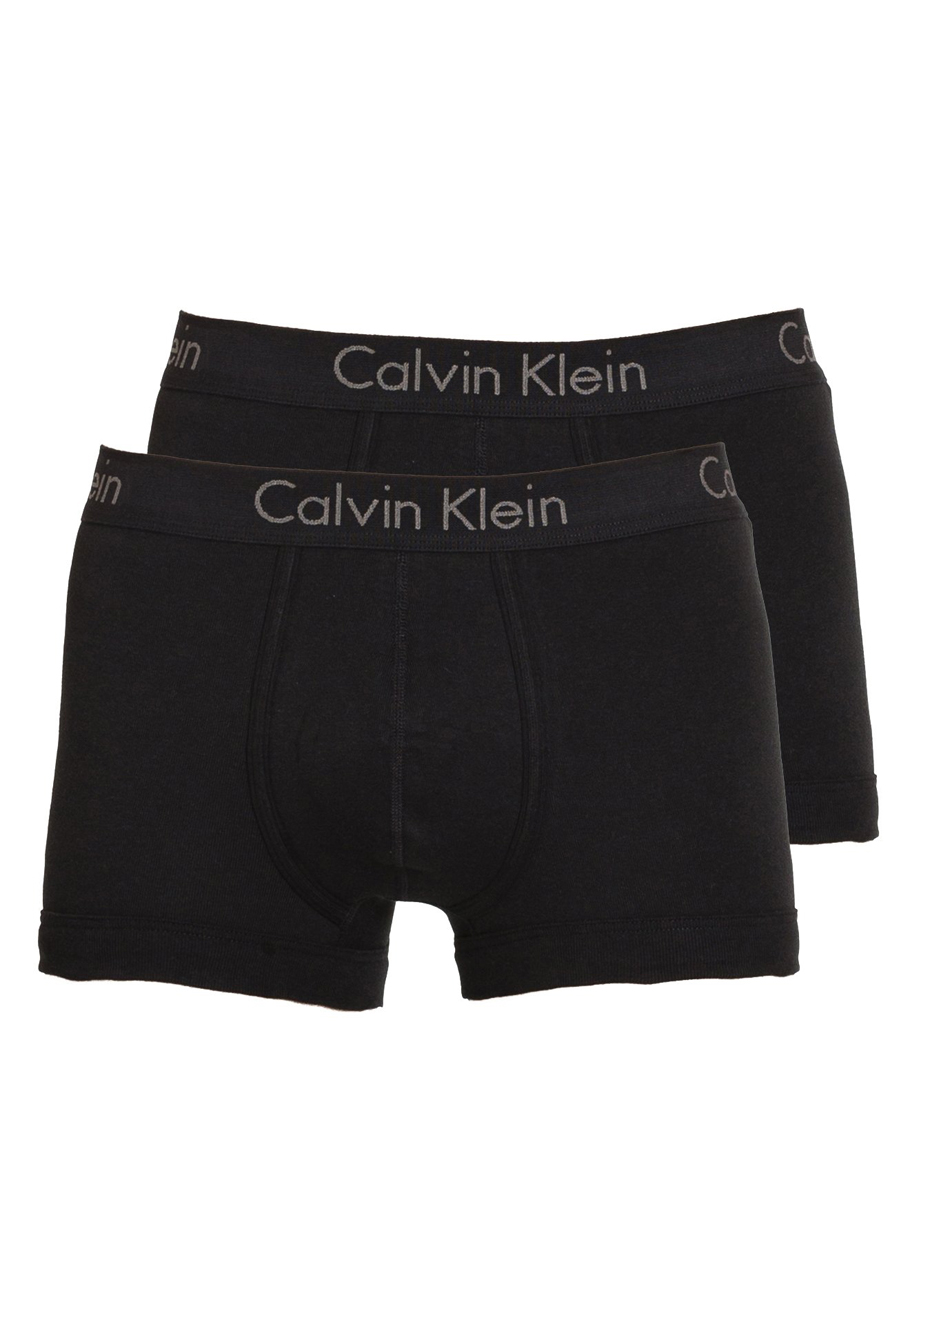 calvin klein underwear nz